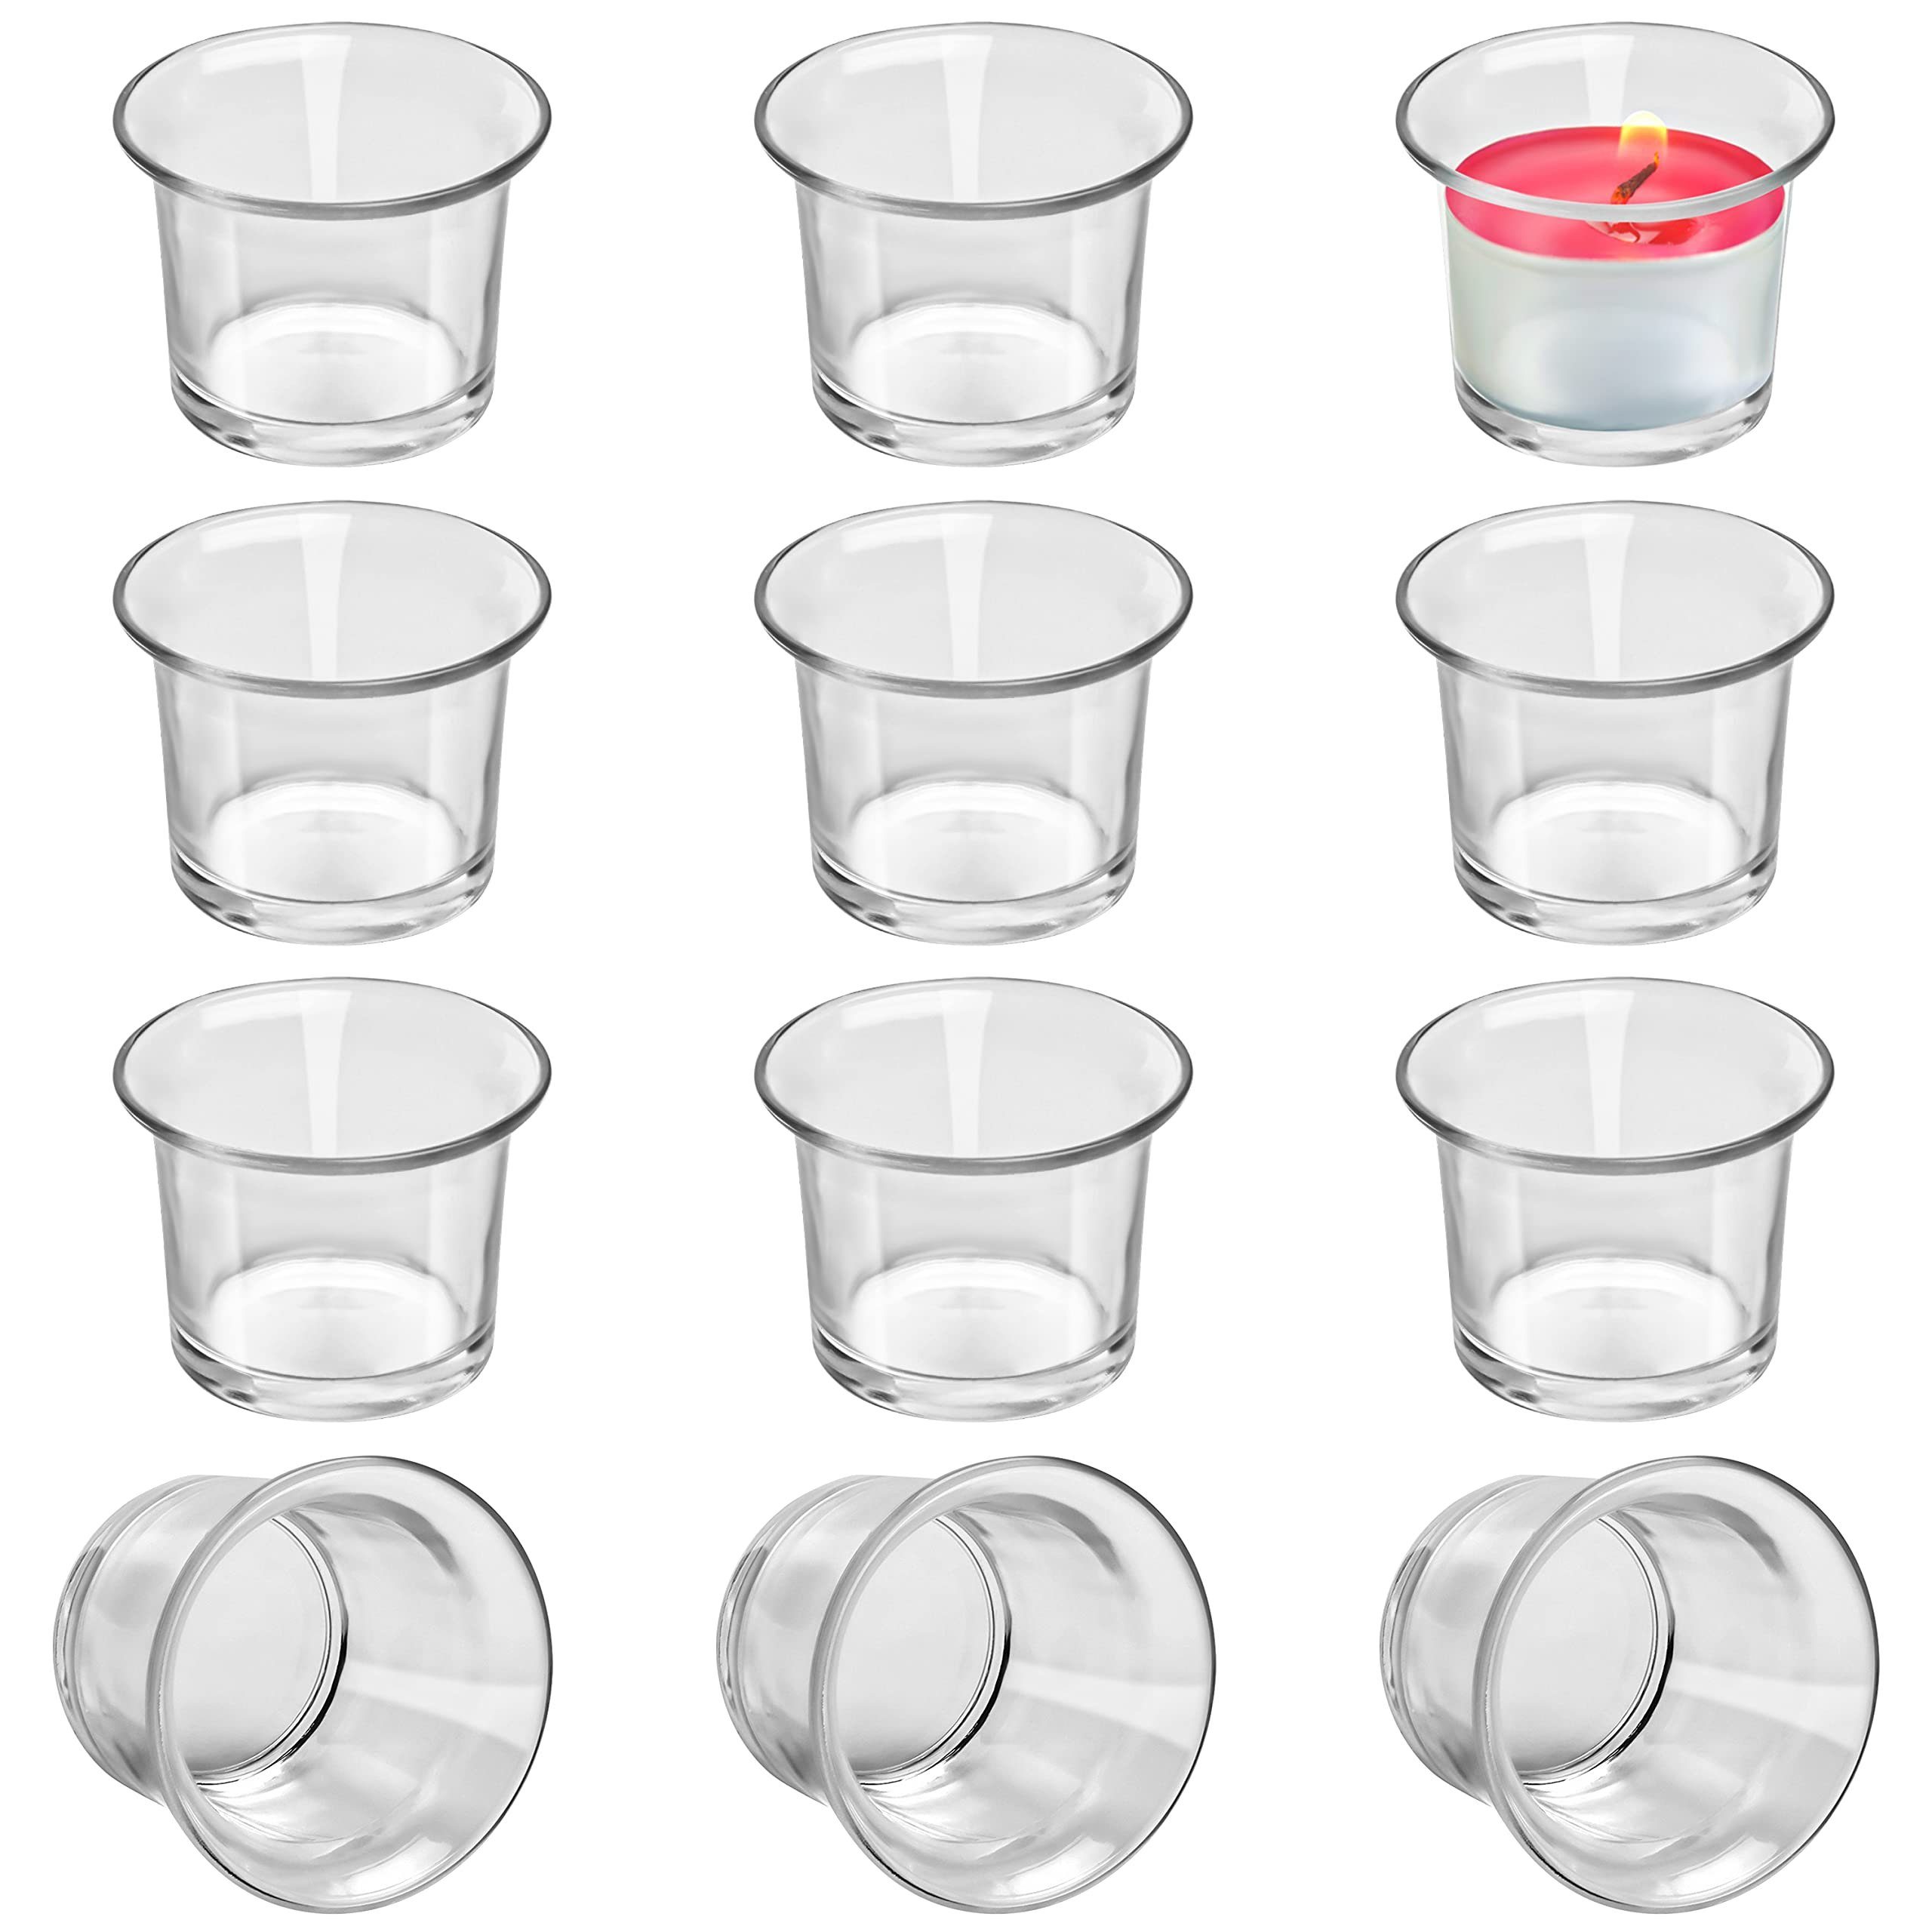 Belle Vous Dekoobjekt Transparente Teelichthalter aus Glas - 12er Pack, Transparente Glas Teelichthalter - 12 Stück